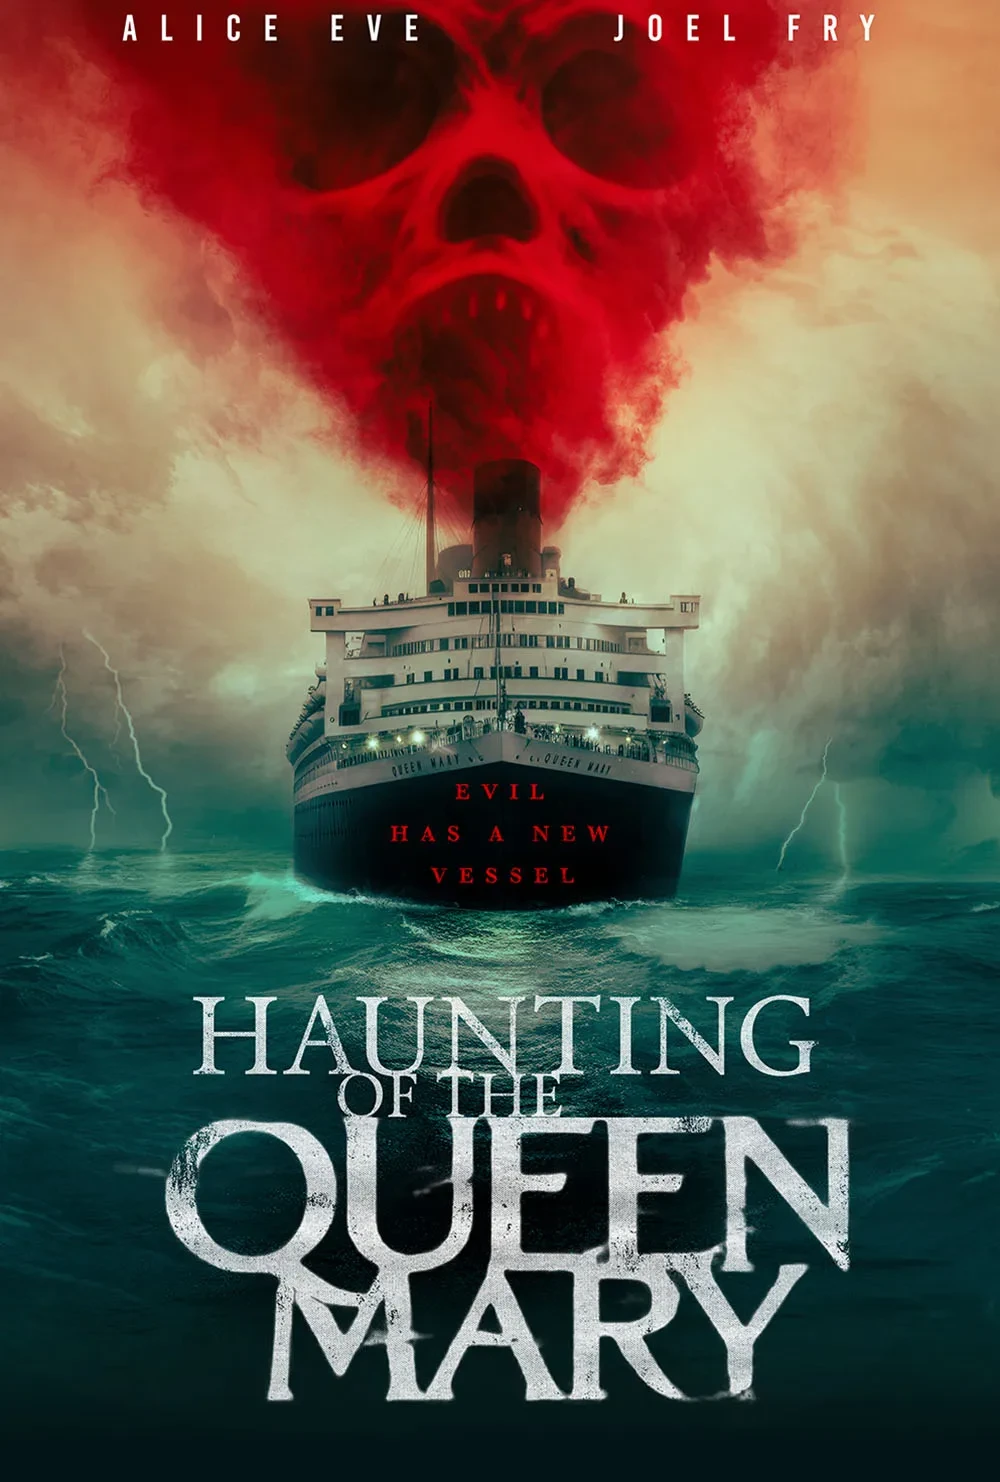 A Maldição do Queen Mary  Crítica do filme de terror